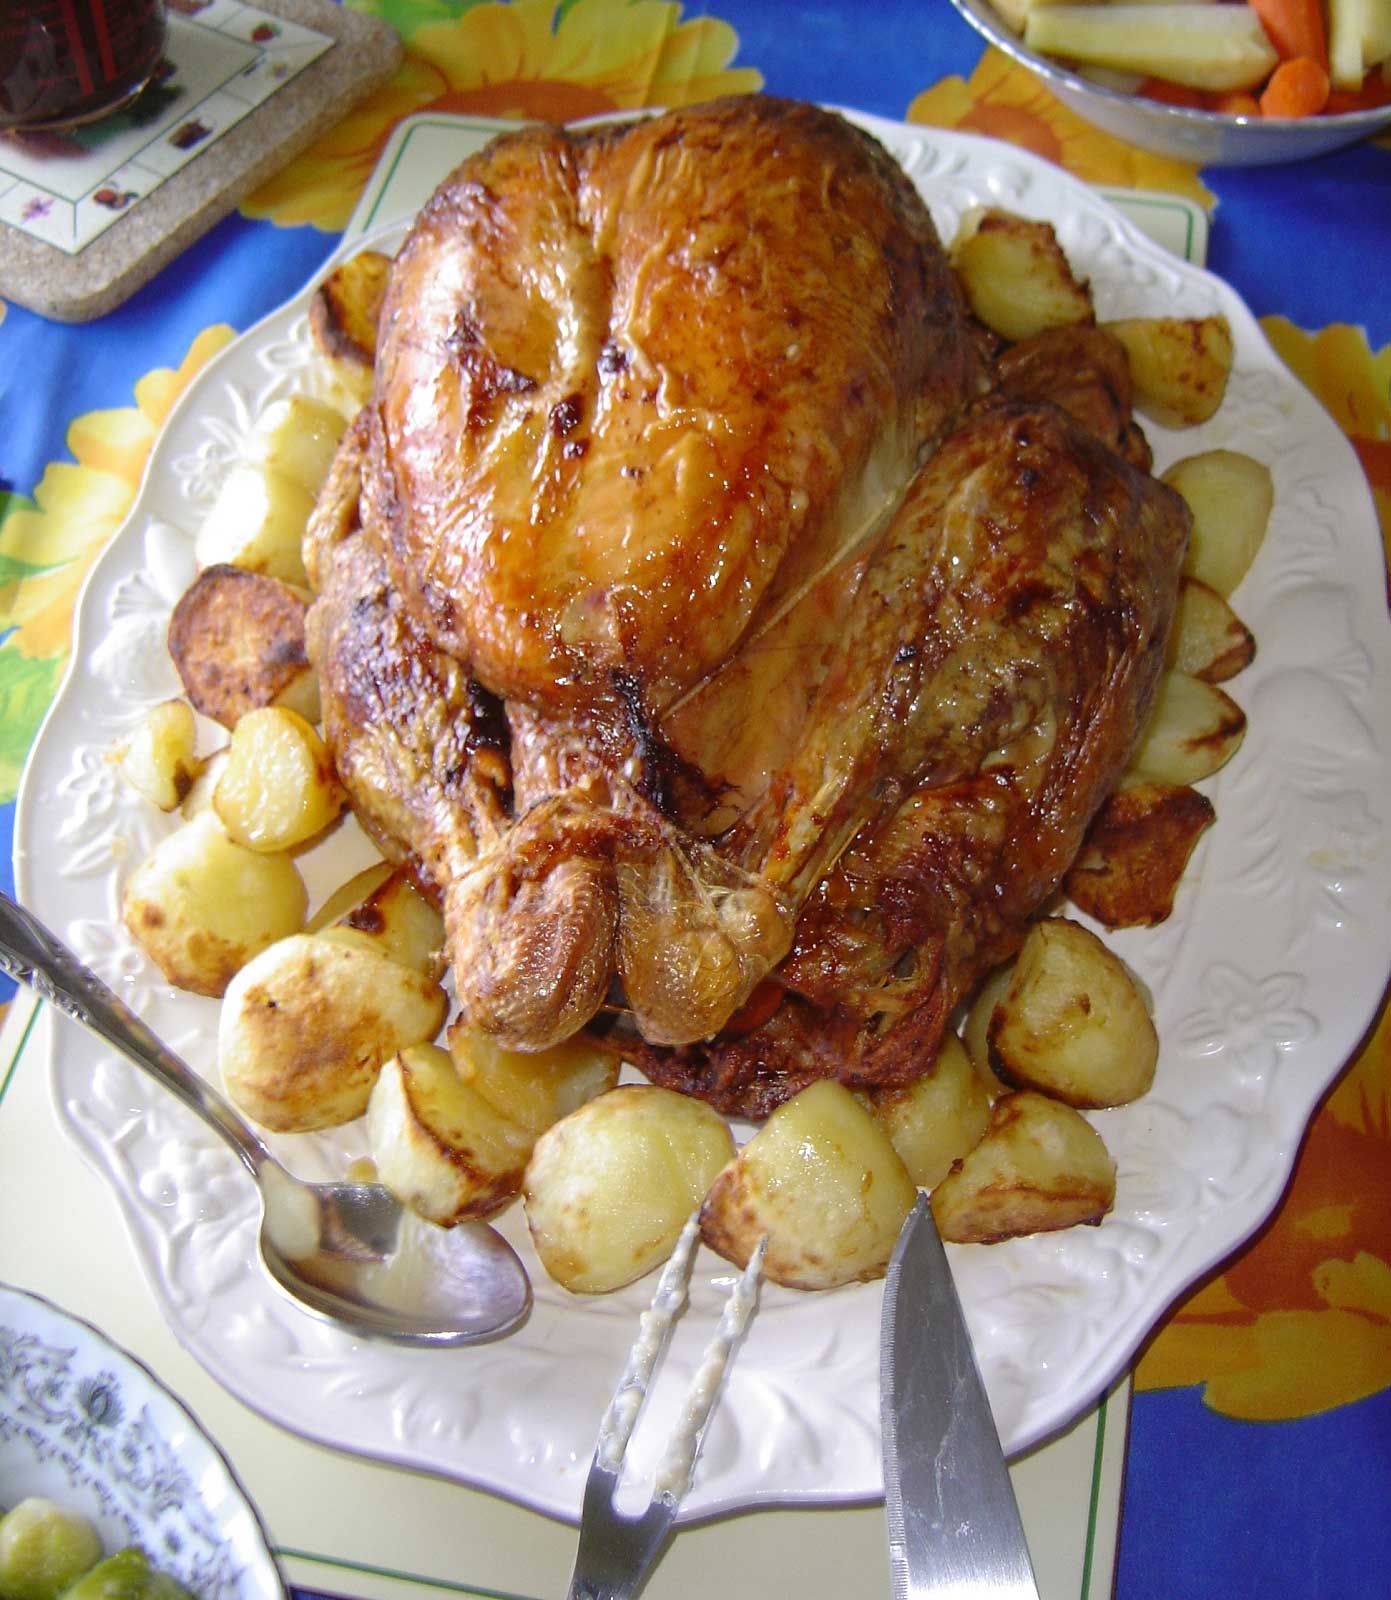 Roasted turkey on platter